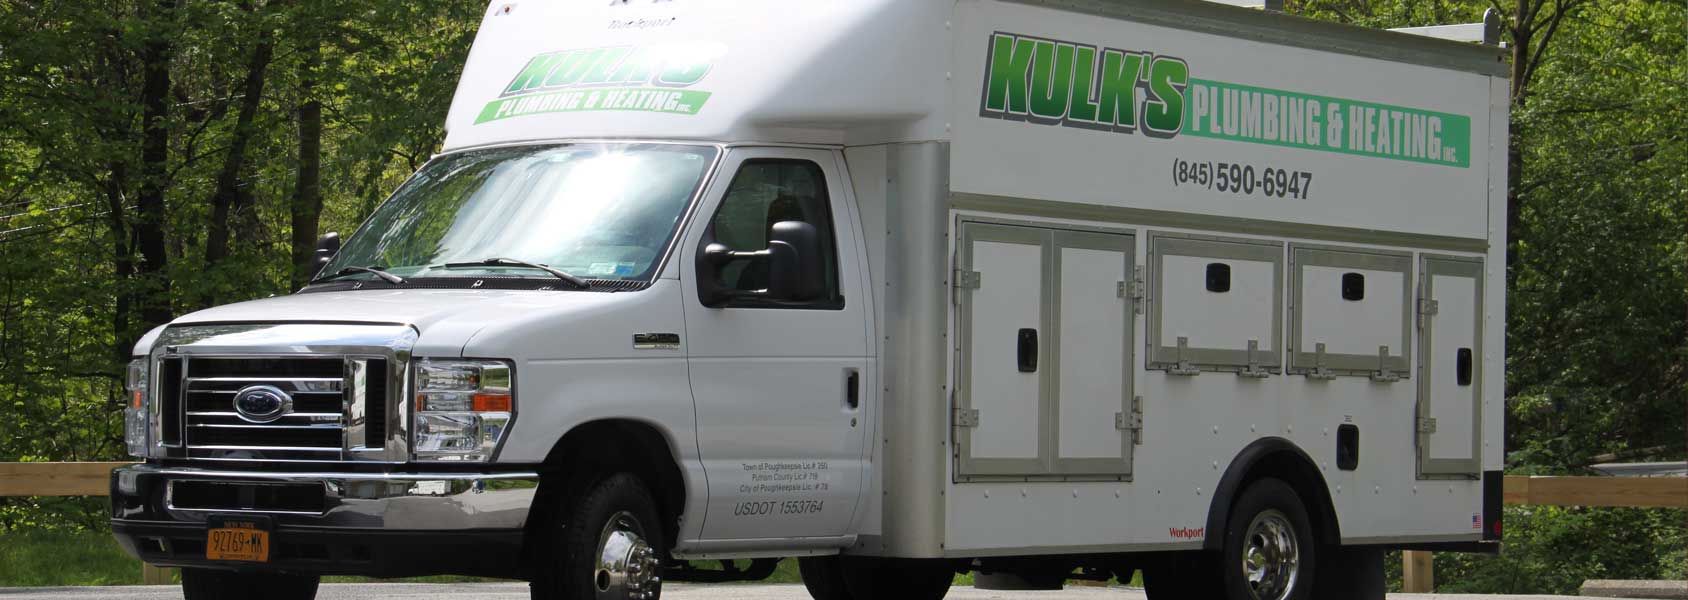 Kulk's Plumbing & Heating truck